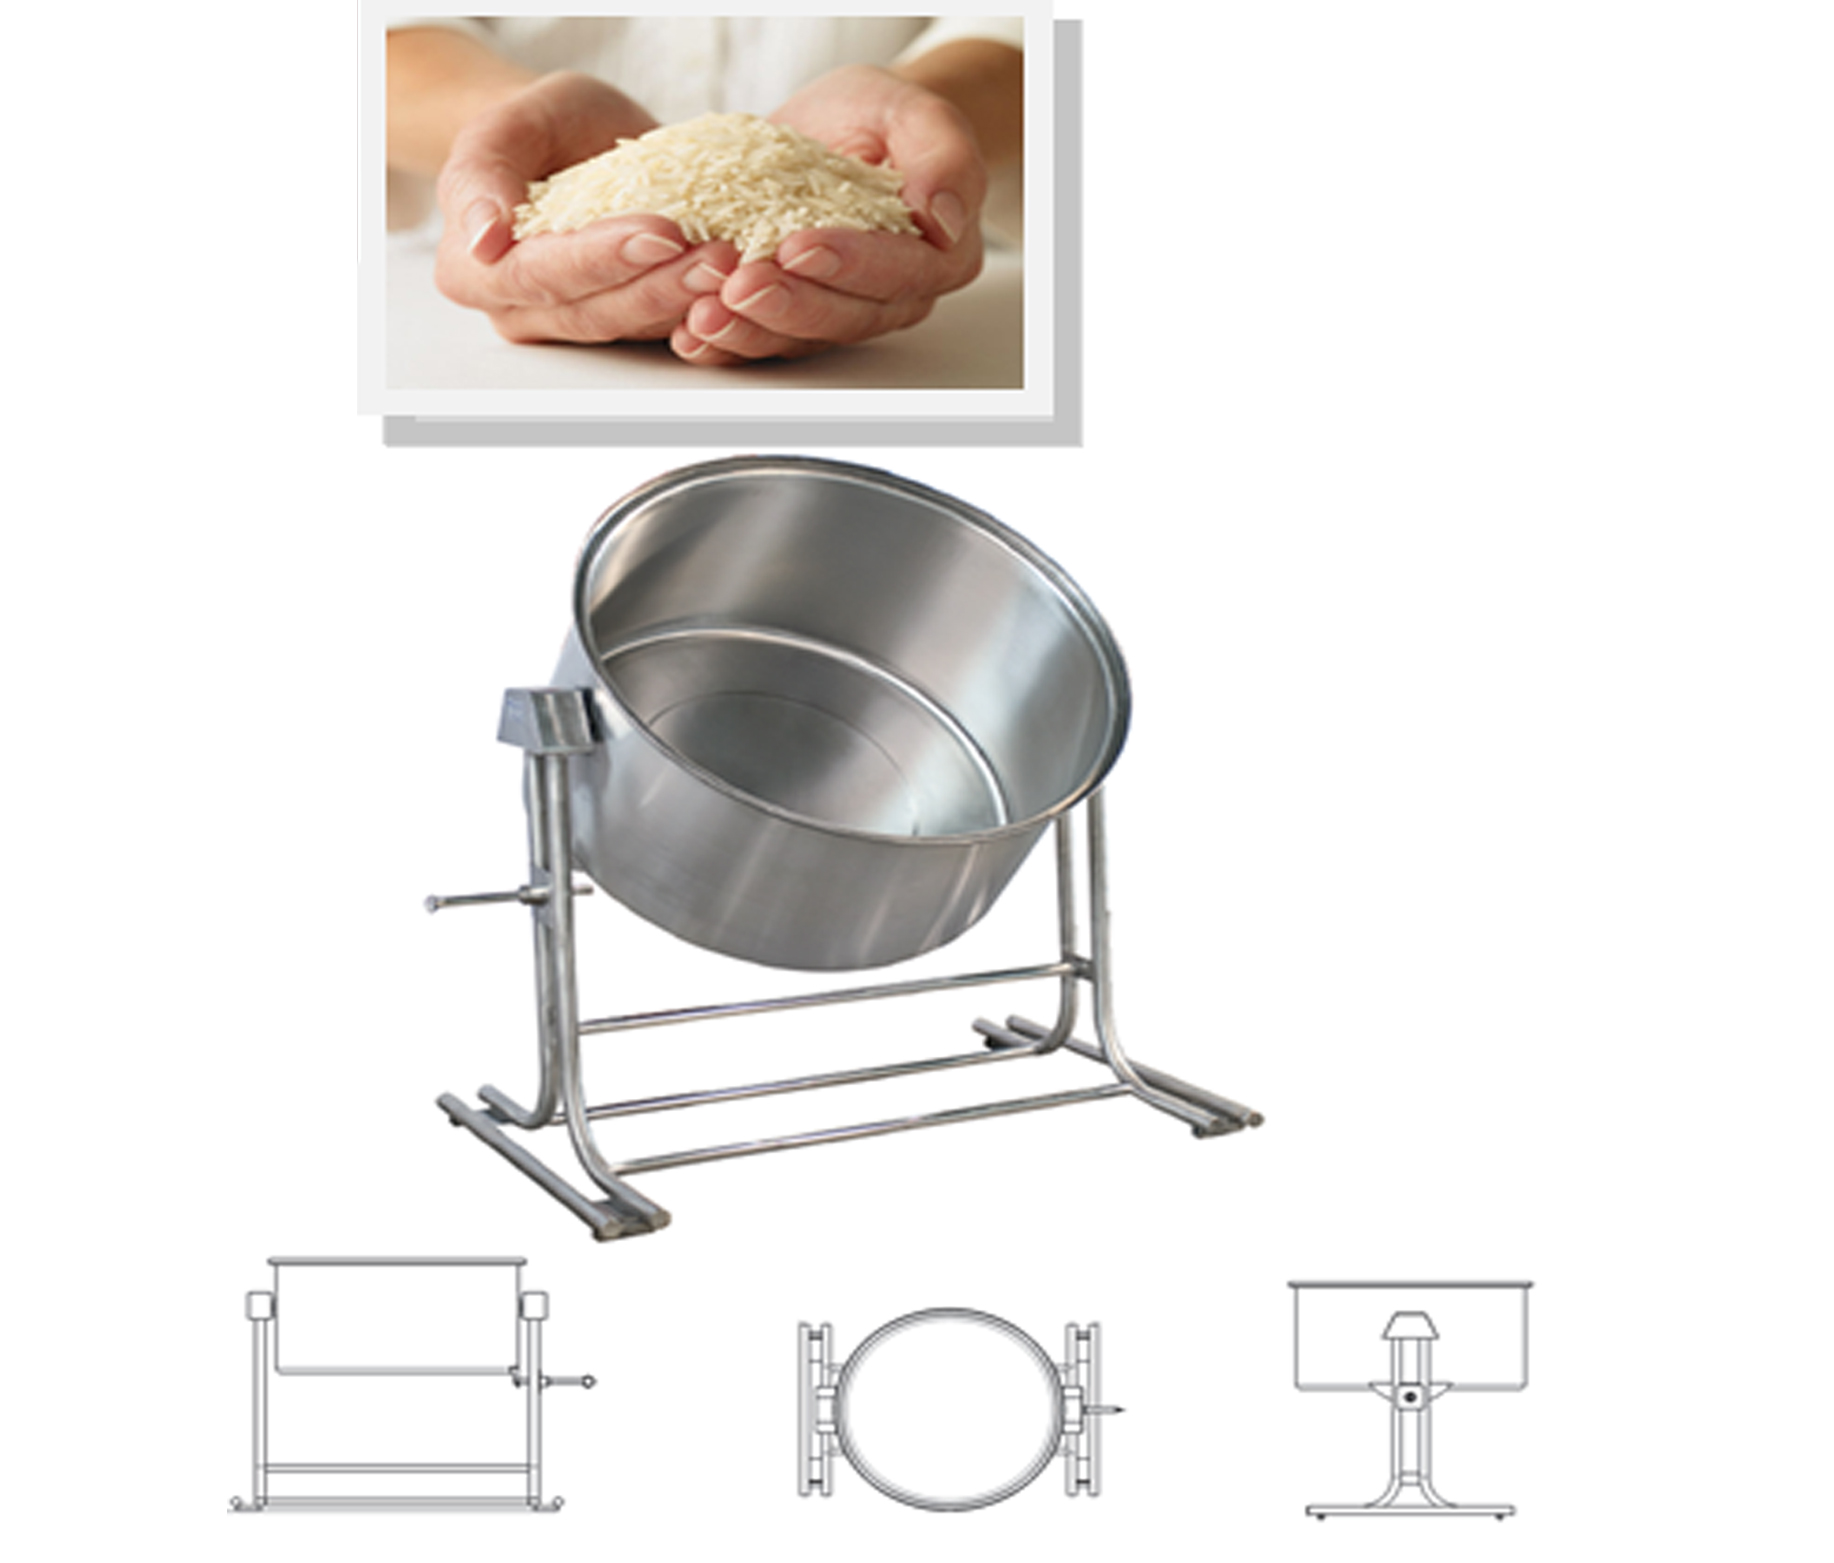 پاتیل خیساندن برنج-برنج-خیساندن-تولید پاتیل-فروش پاتیل-گروه صنعتی پیام-تجهیزات آشپزخانه صنعتی - تجهیزات آشپزخانه های صنعتی